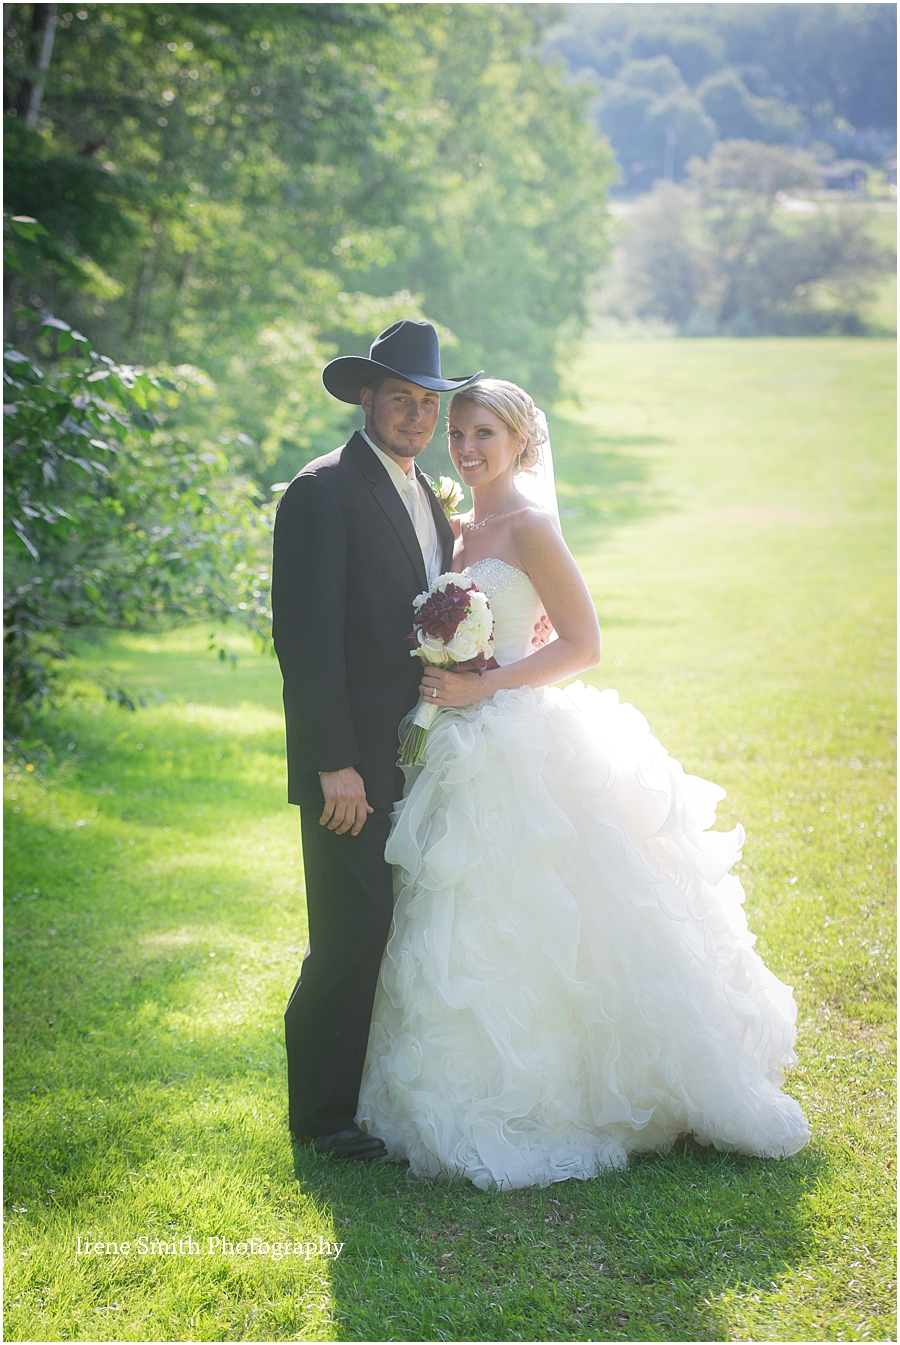 Lake-Latonka-Pennsylvania-Wedding-Irene-Smith-Photography_0031.jpg